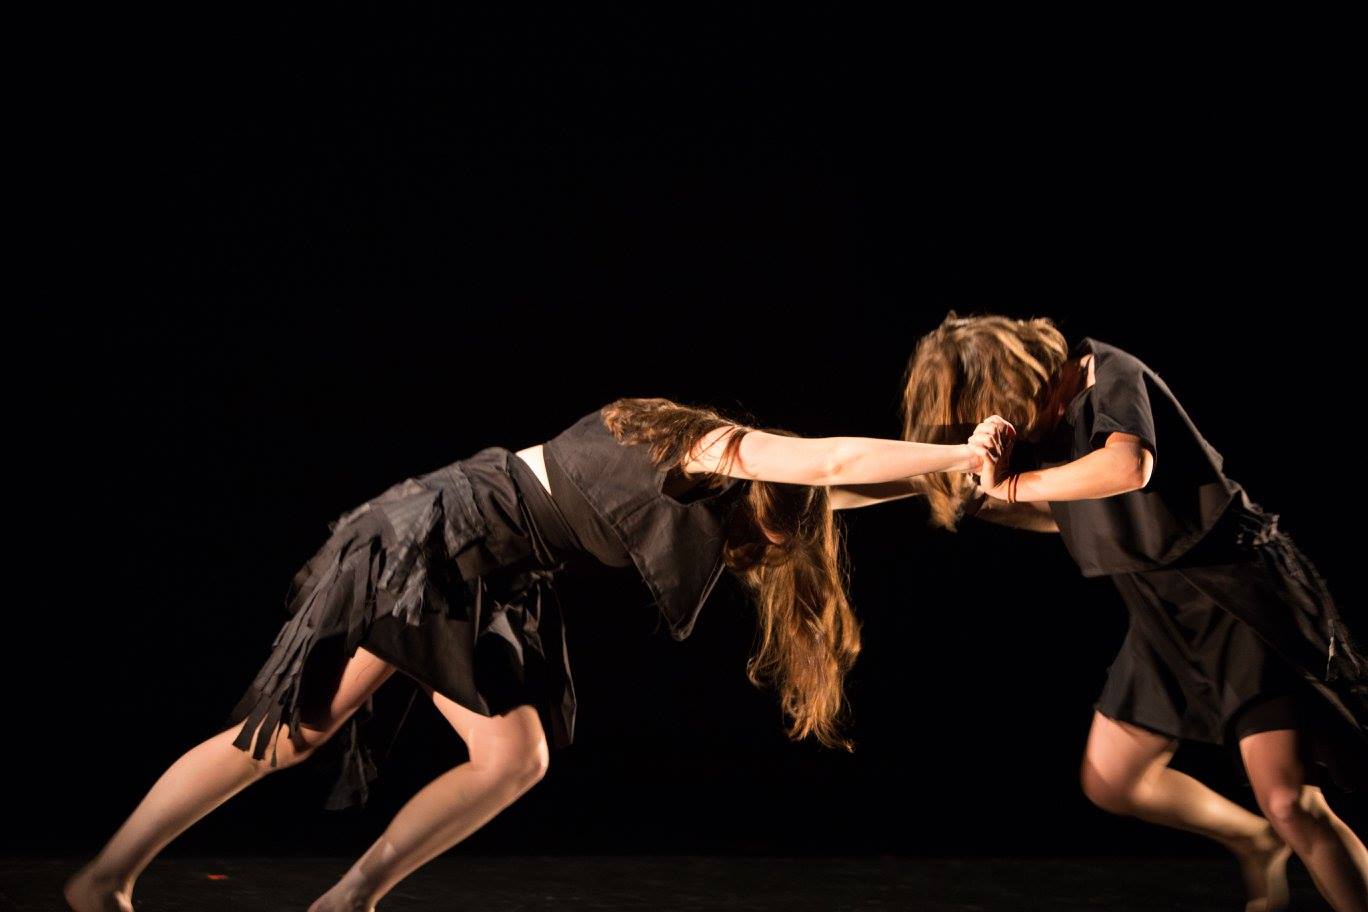 "I's and no's" choreographed by Sarah Greenbaum